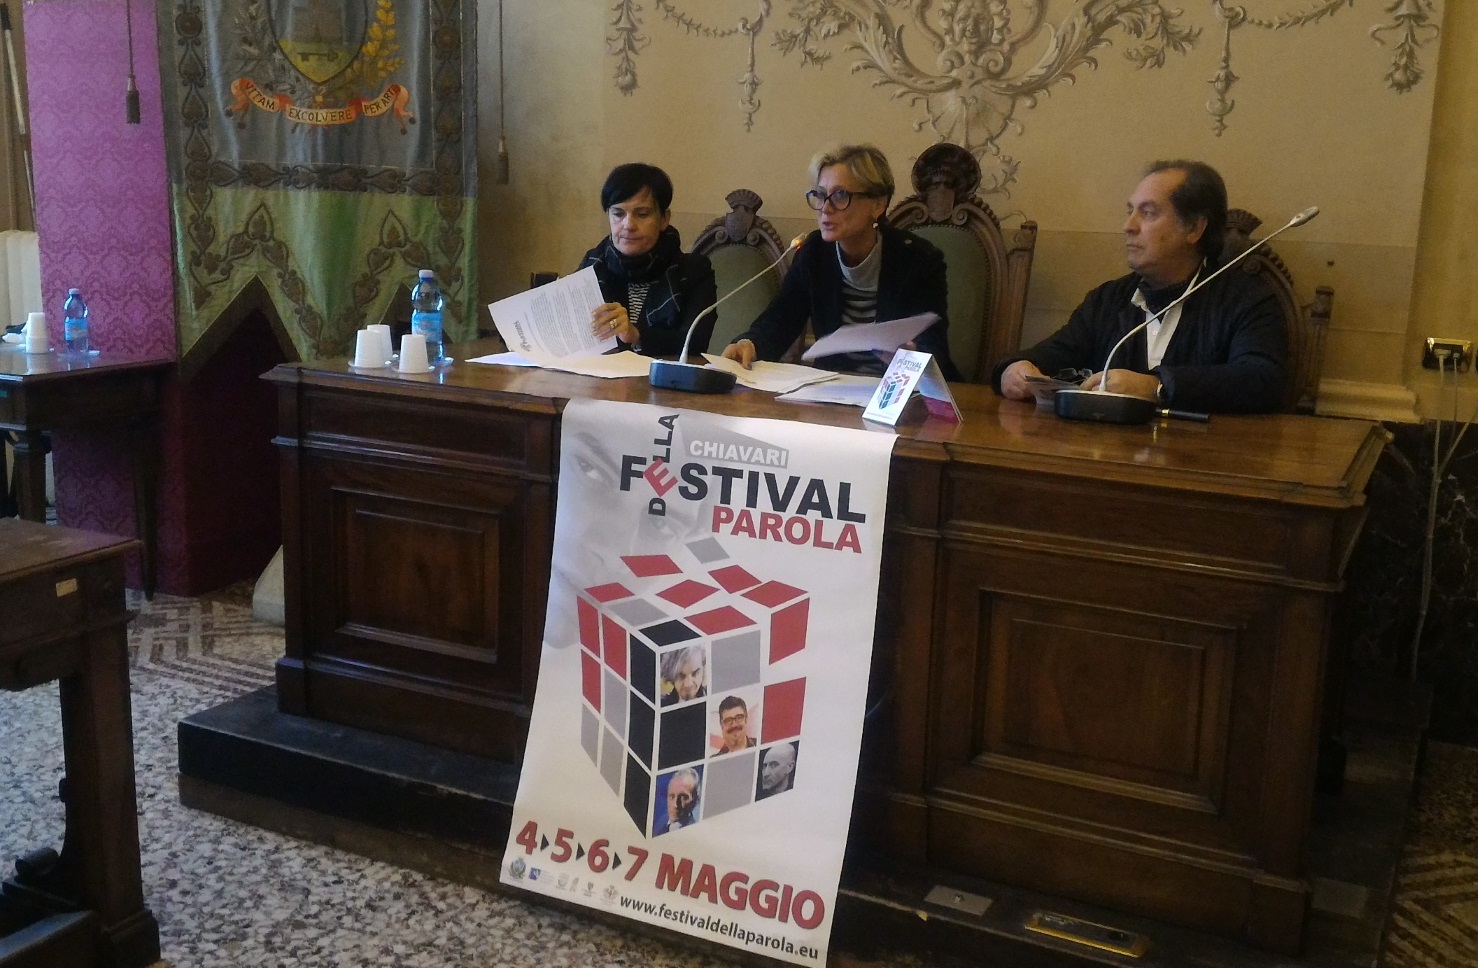 Festival della Parola dedicato a Tenco e Simenon, con Morgan e Marco Travaglio